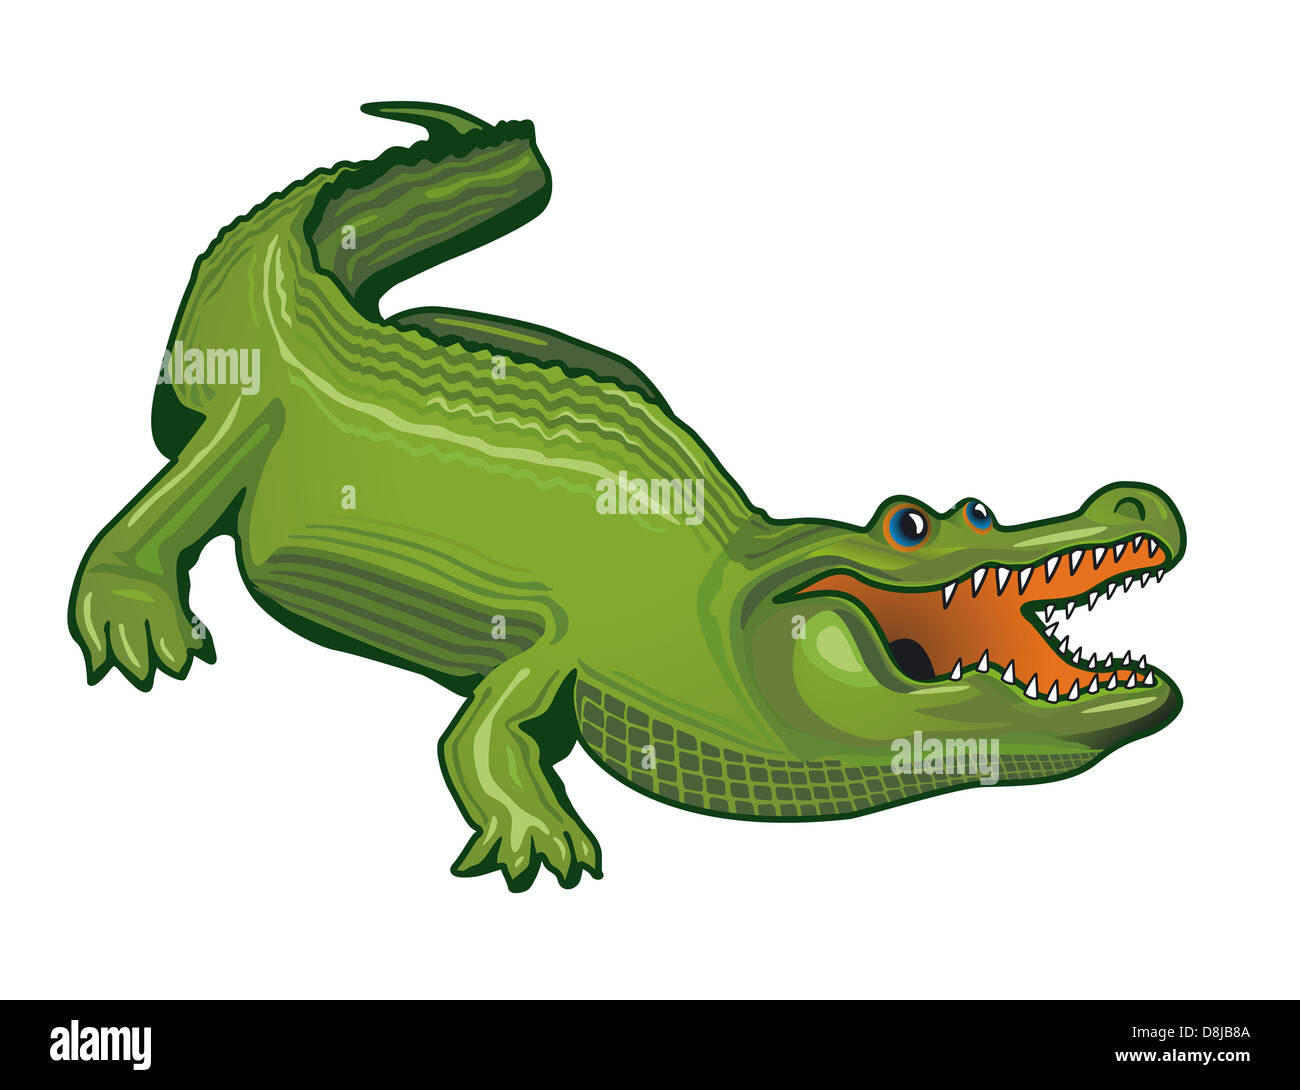 large alligator Stock Photo